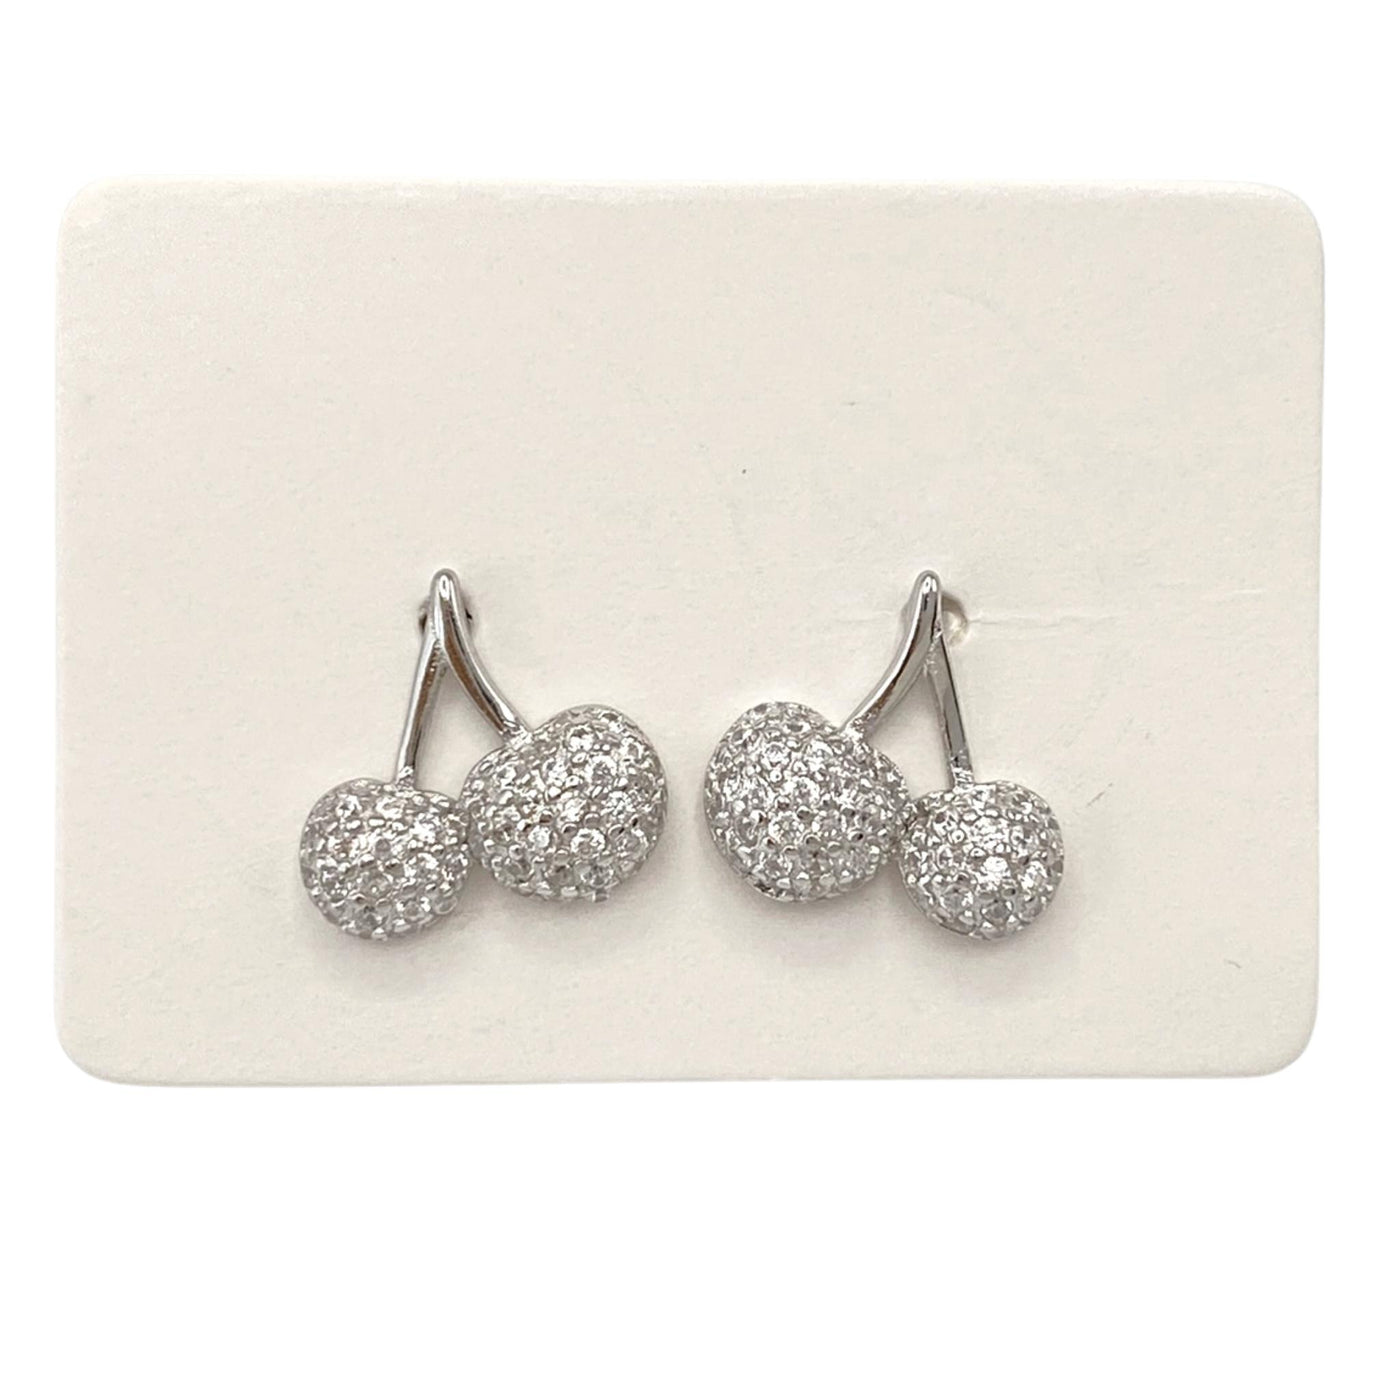 Pack of 5 silver stud cherries earrings